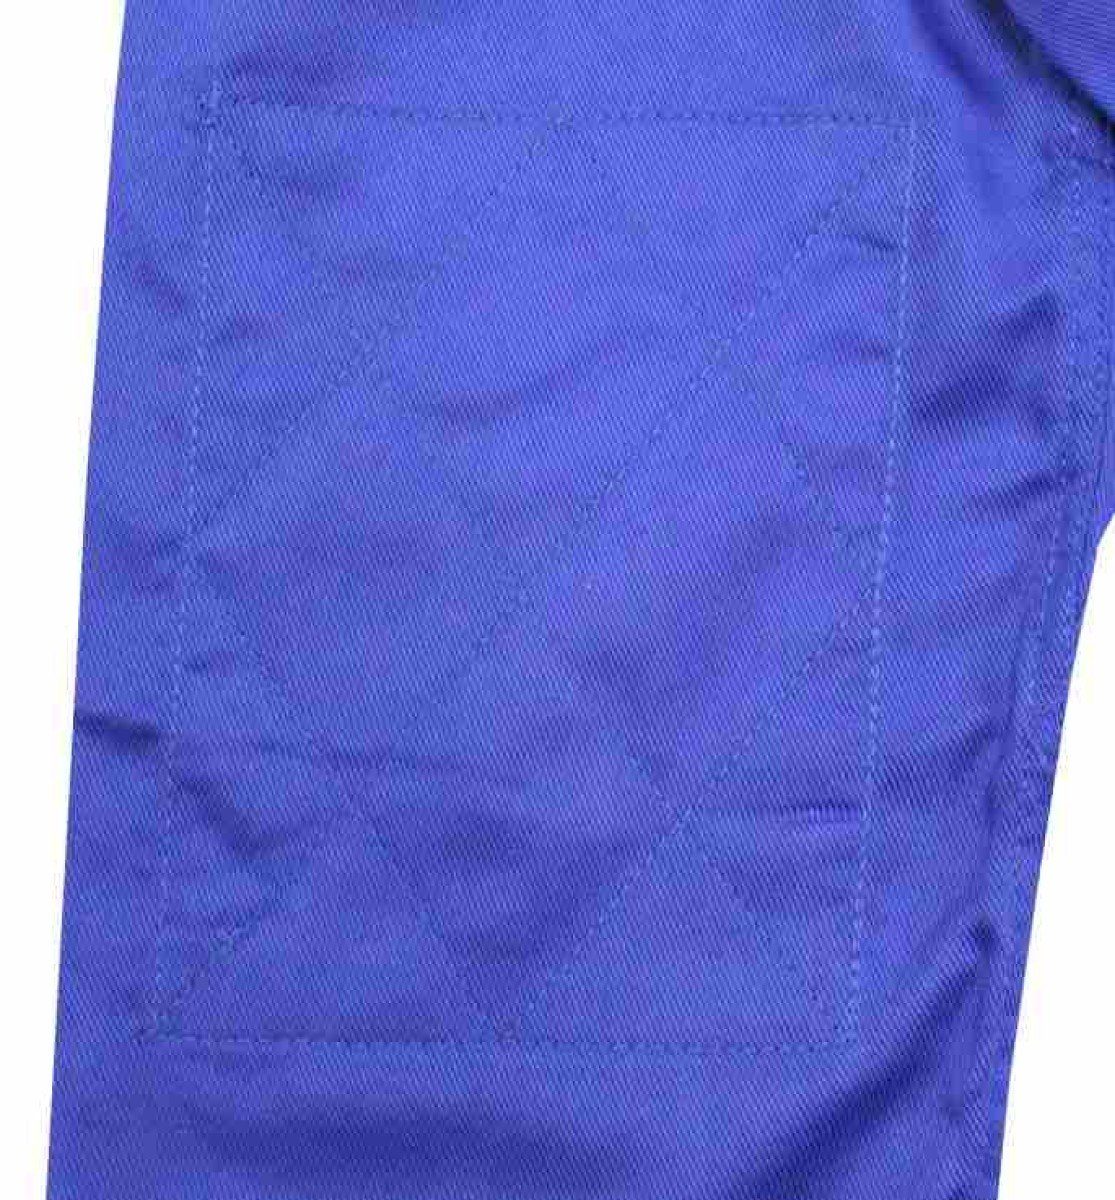 gr. Judoanzug blau mittelschwer mit SBJ 450 Jacke Reißkornwebung